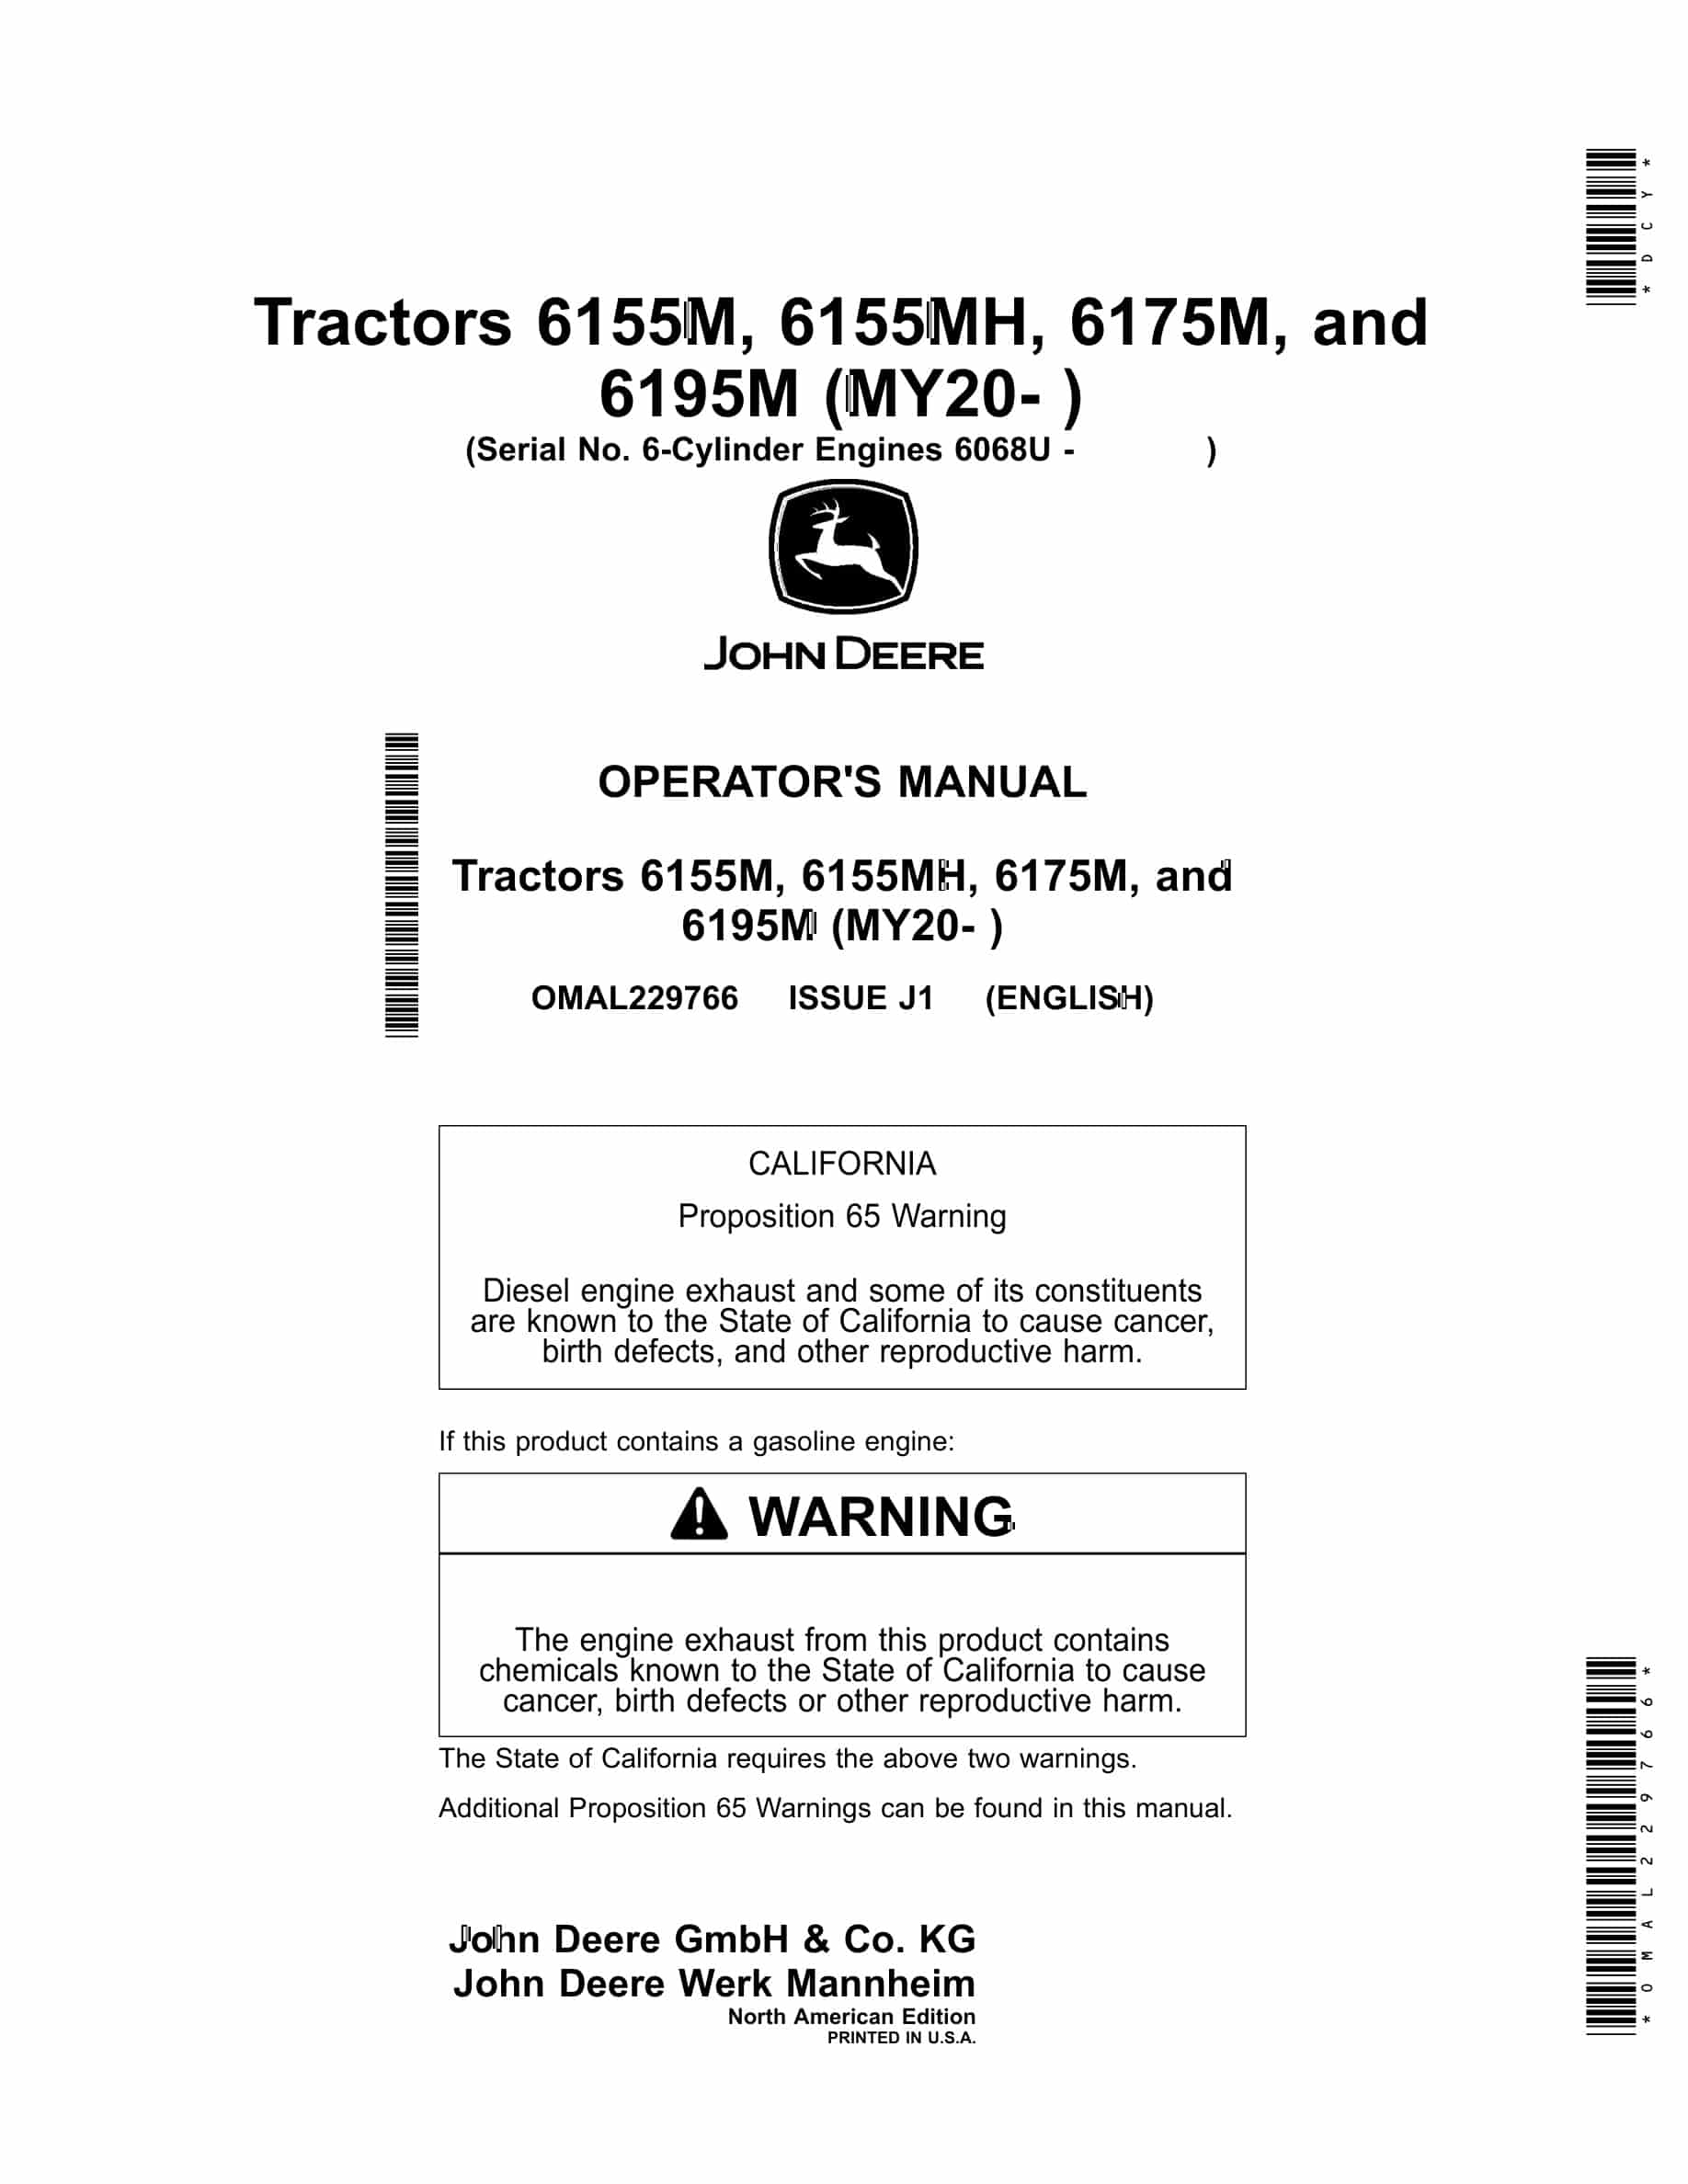 John Deere 6155M, 6155MH, 6175M, and 6195M Tractor Operator Manual OMAL229766-1